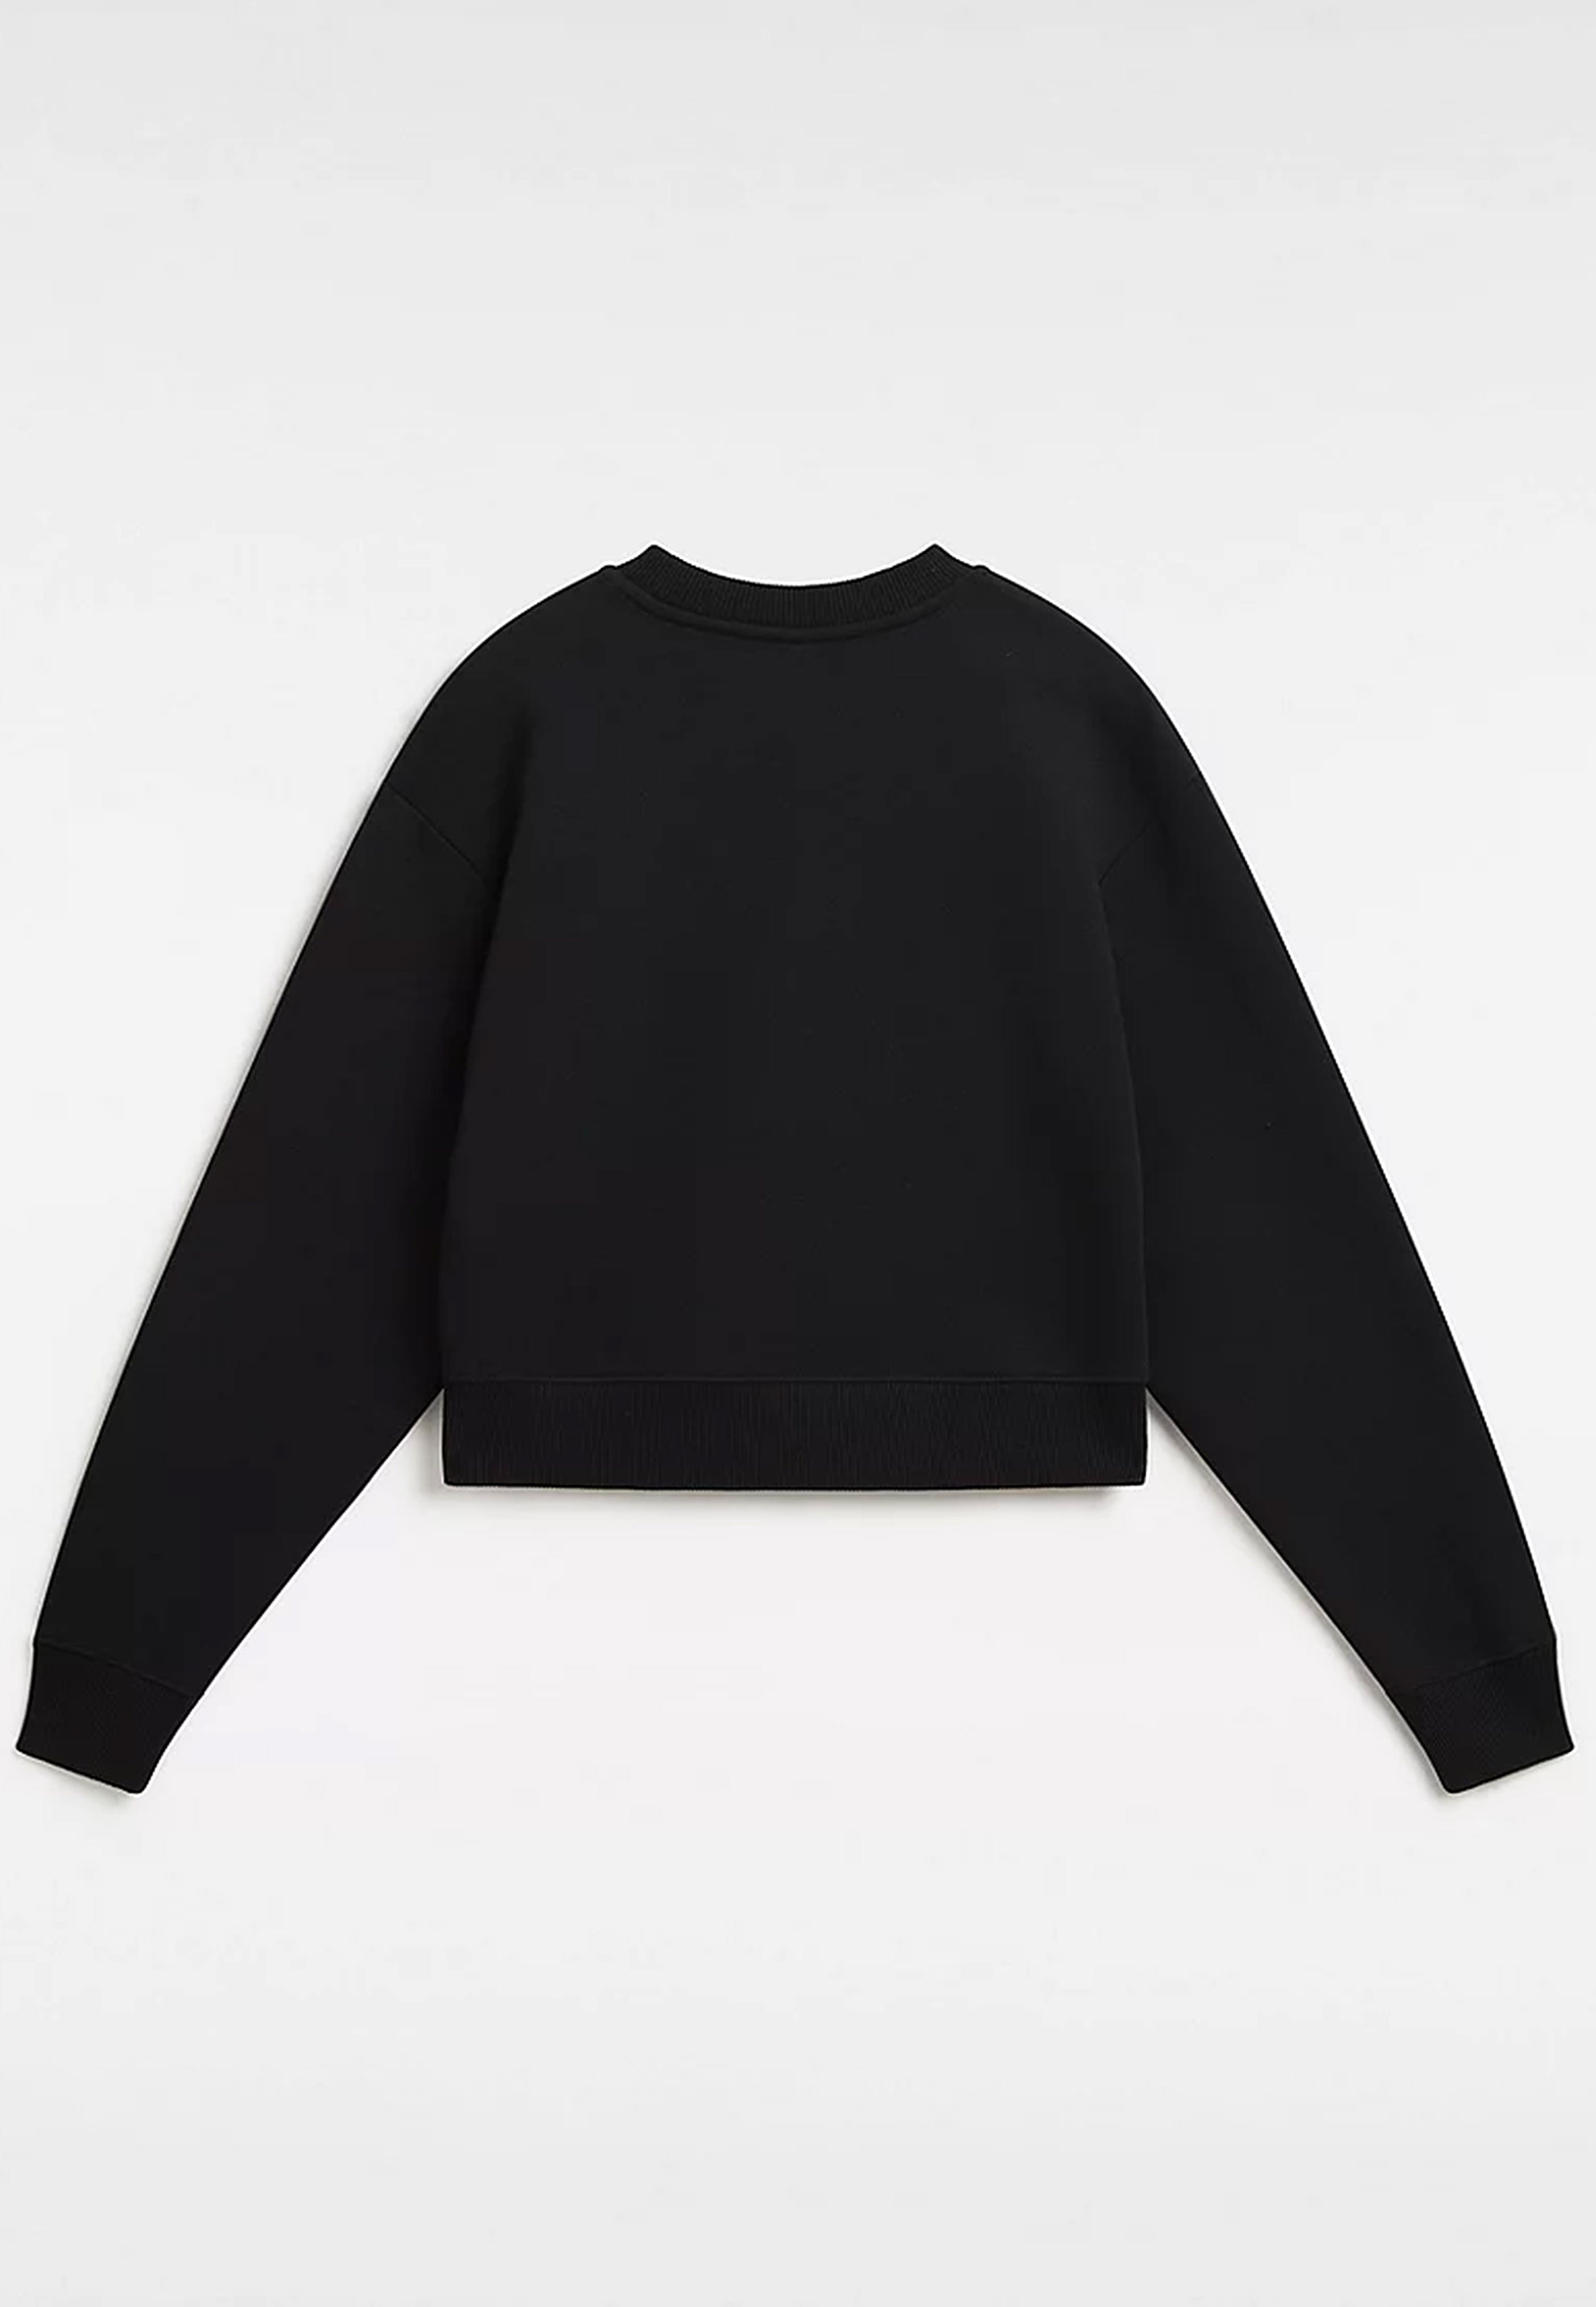 Vans - Go Anyplace Crop Crew Black - Sweater